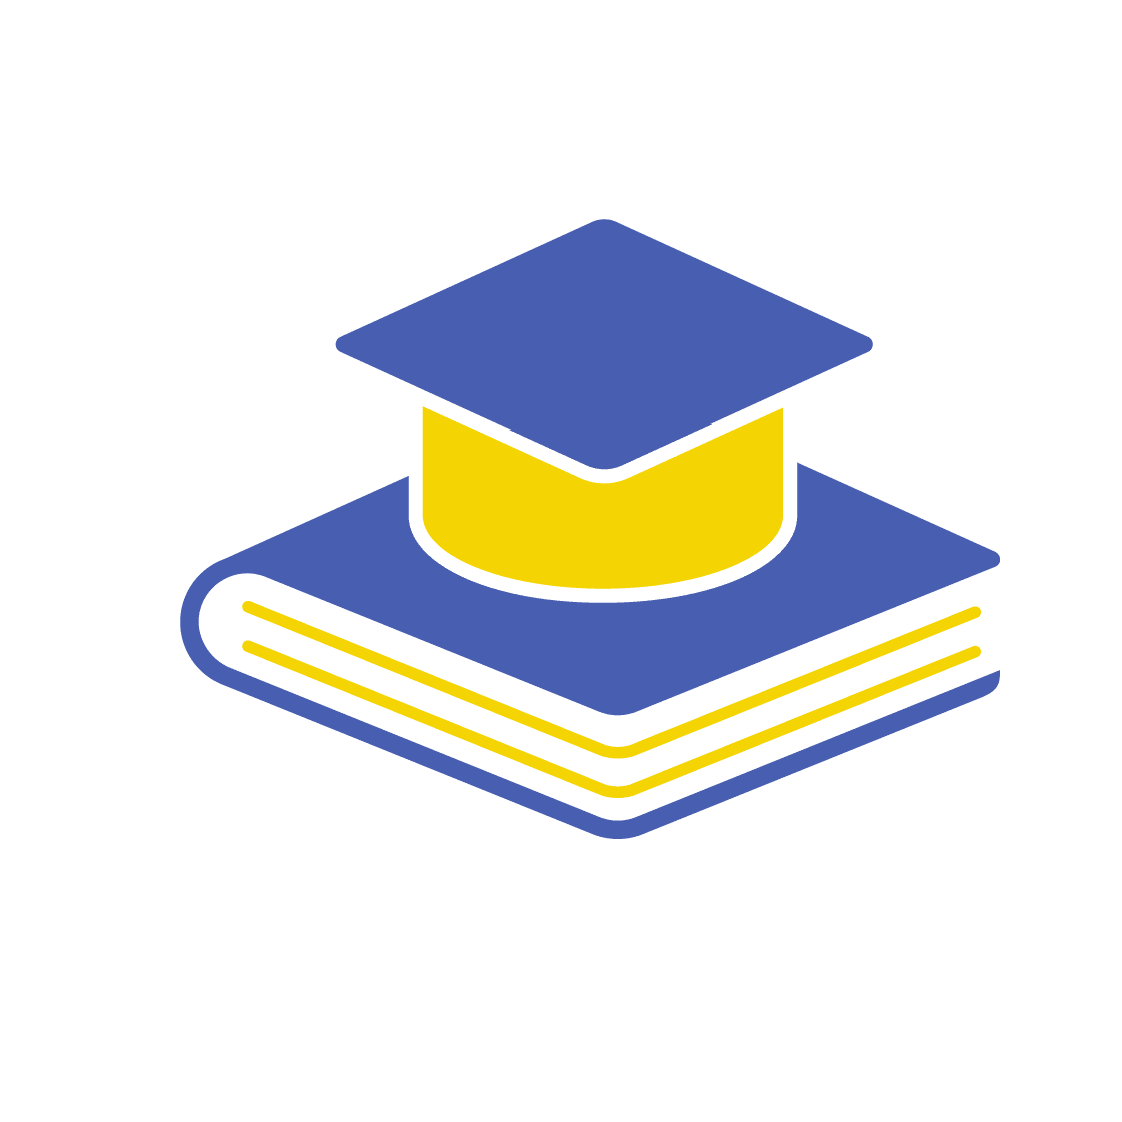 Postgraduate Diploma in Education